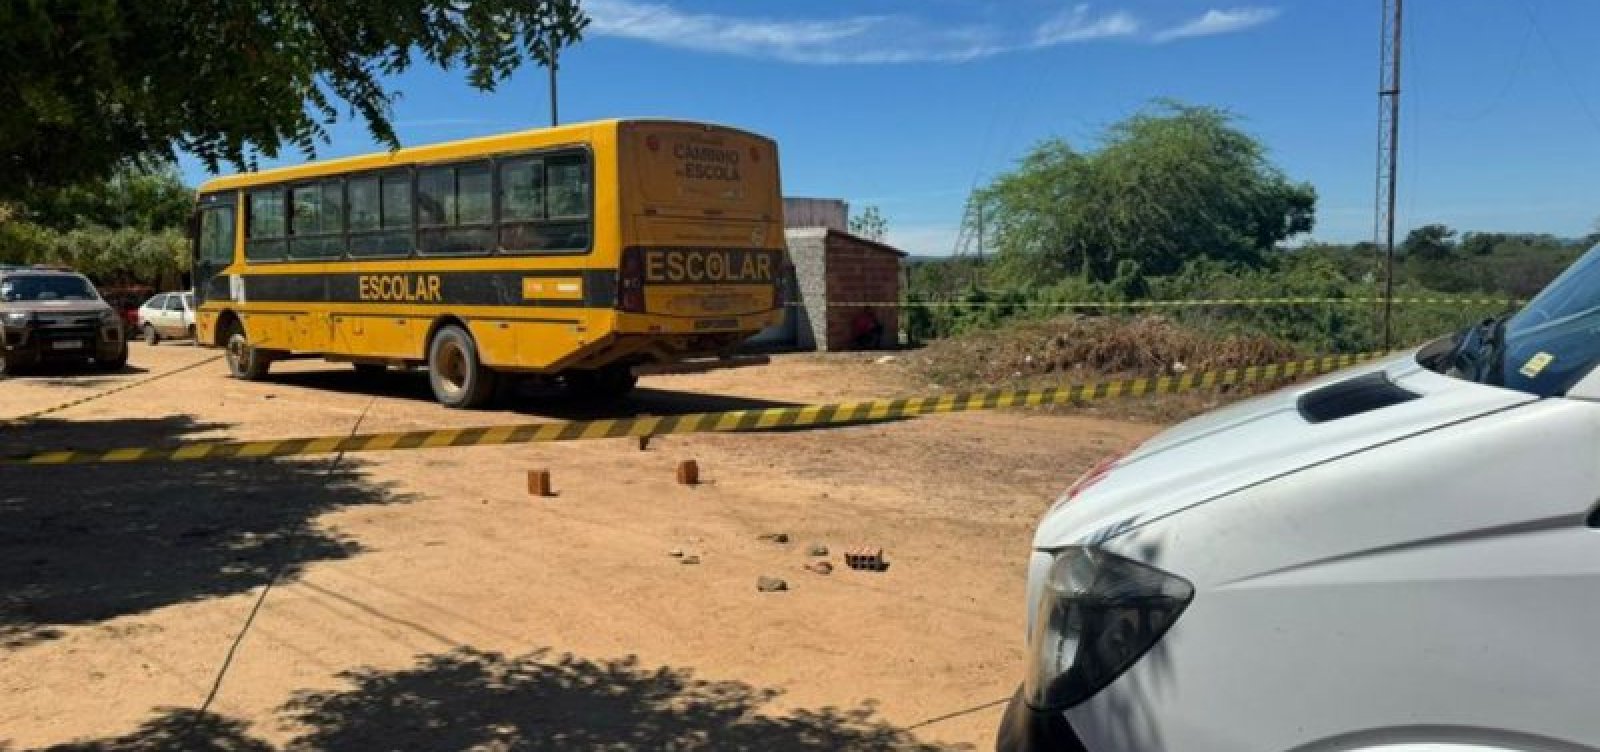 Criança de oito anos morre no interior da Bahia após ser atingida por ônibus escolar 